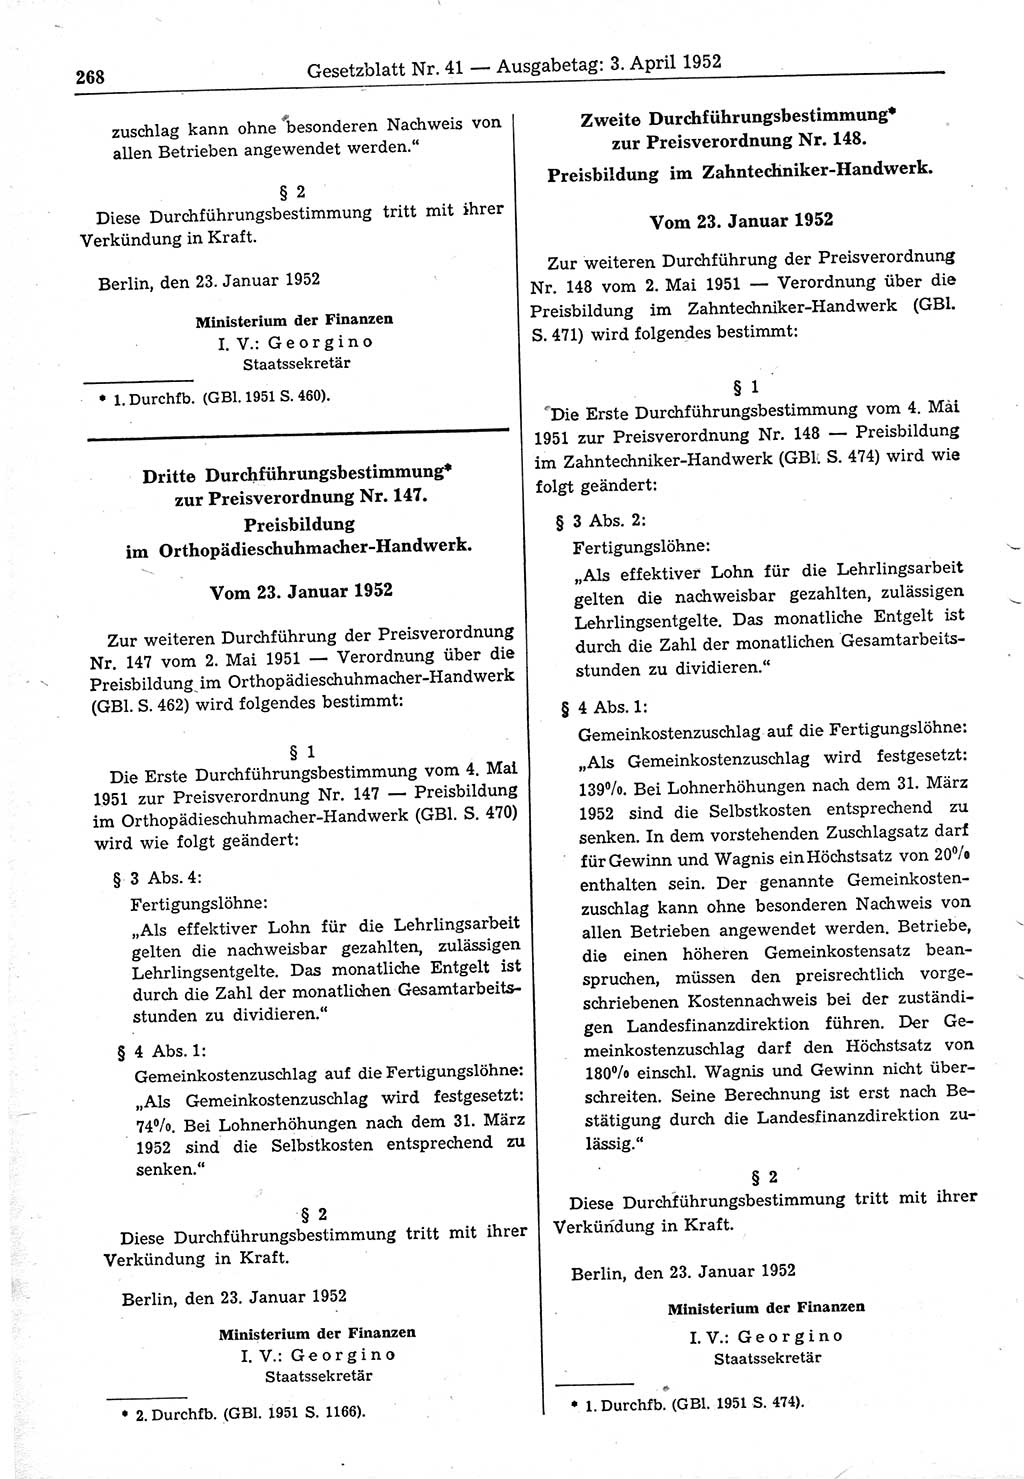 Gesetzblatt (GBl.) der Deutschen Demokratischen Republik (DDR) 1952, Seite 268 (GBl. DDR 1952, S. 268)